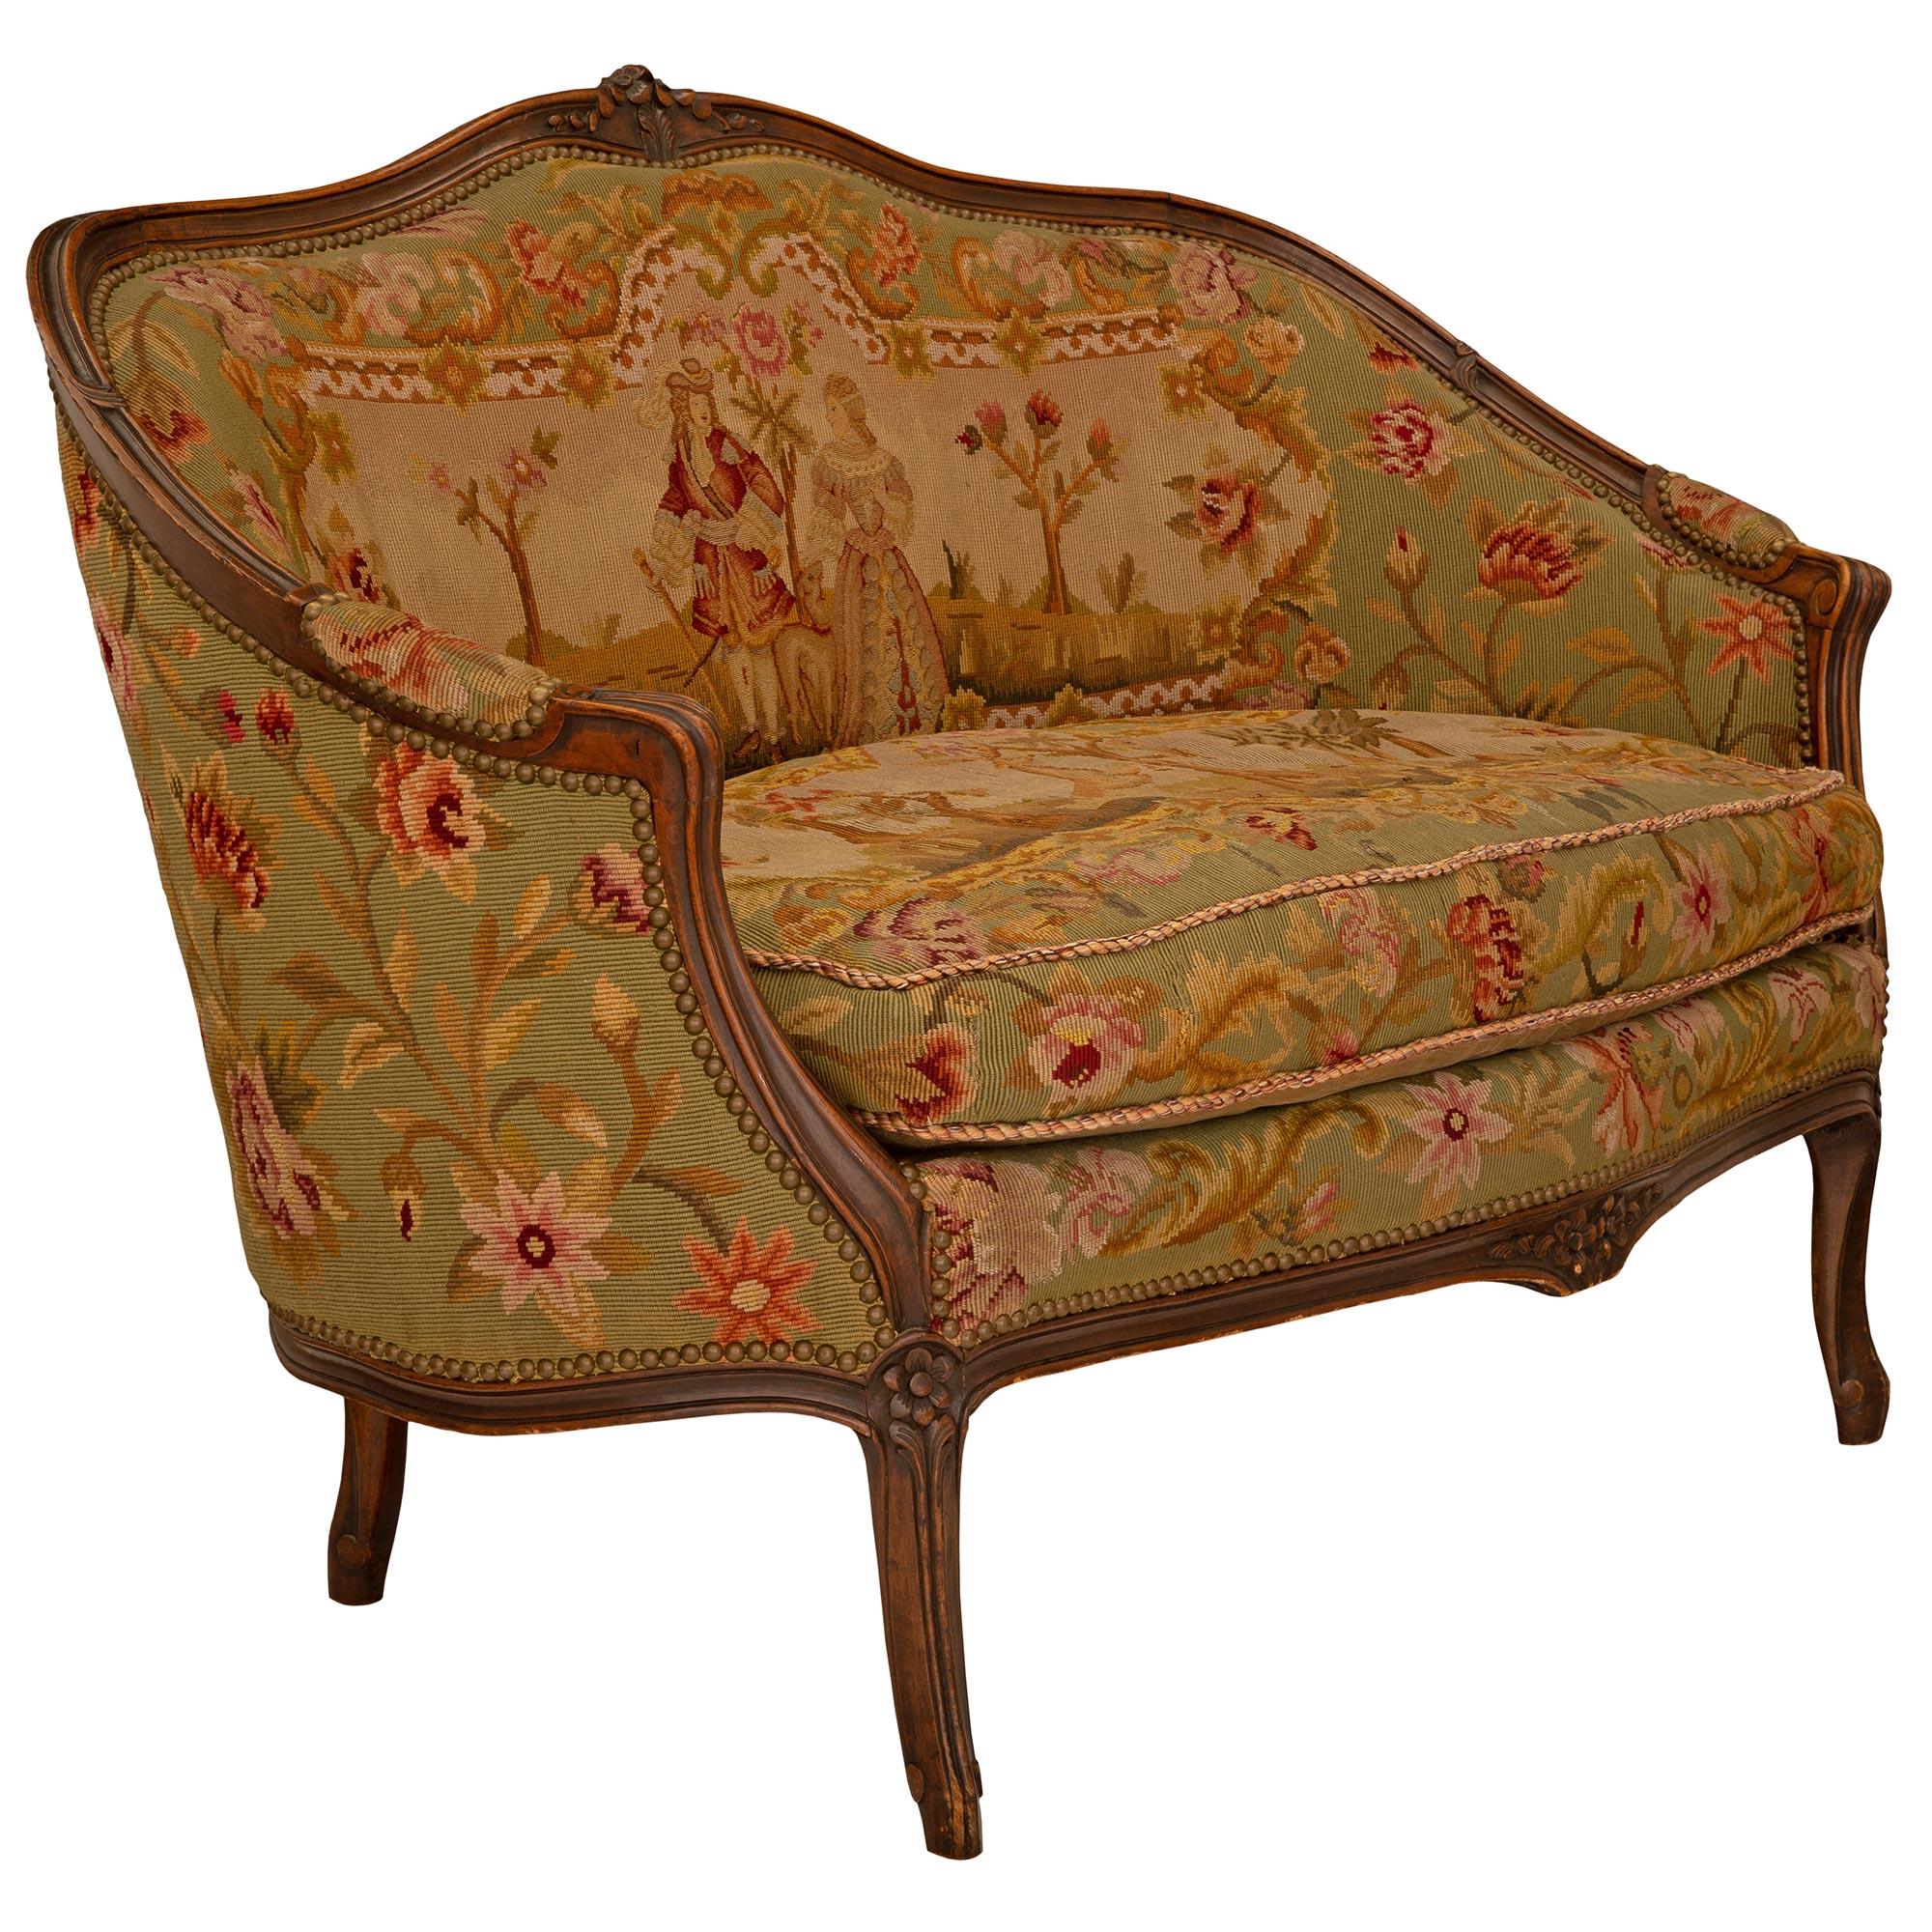 Un charmant canapé français du 19ème siècle de style Louis XV en noyer et tapisserie. Le canapé est surélevé par d'élégants pieds cabriole avec des filets mouchetés finement sculptés qui se prolongent le long de la frise centrée par des fleurs